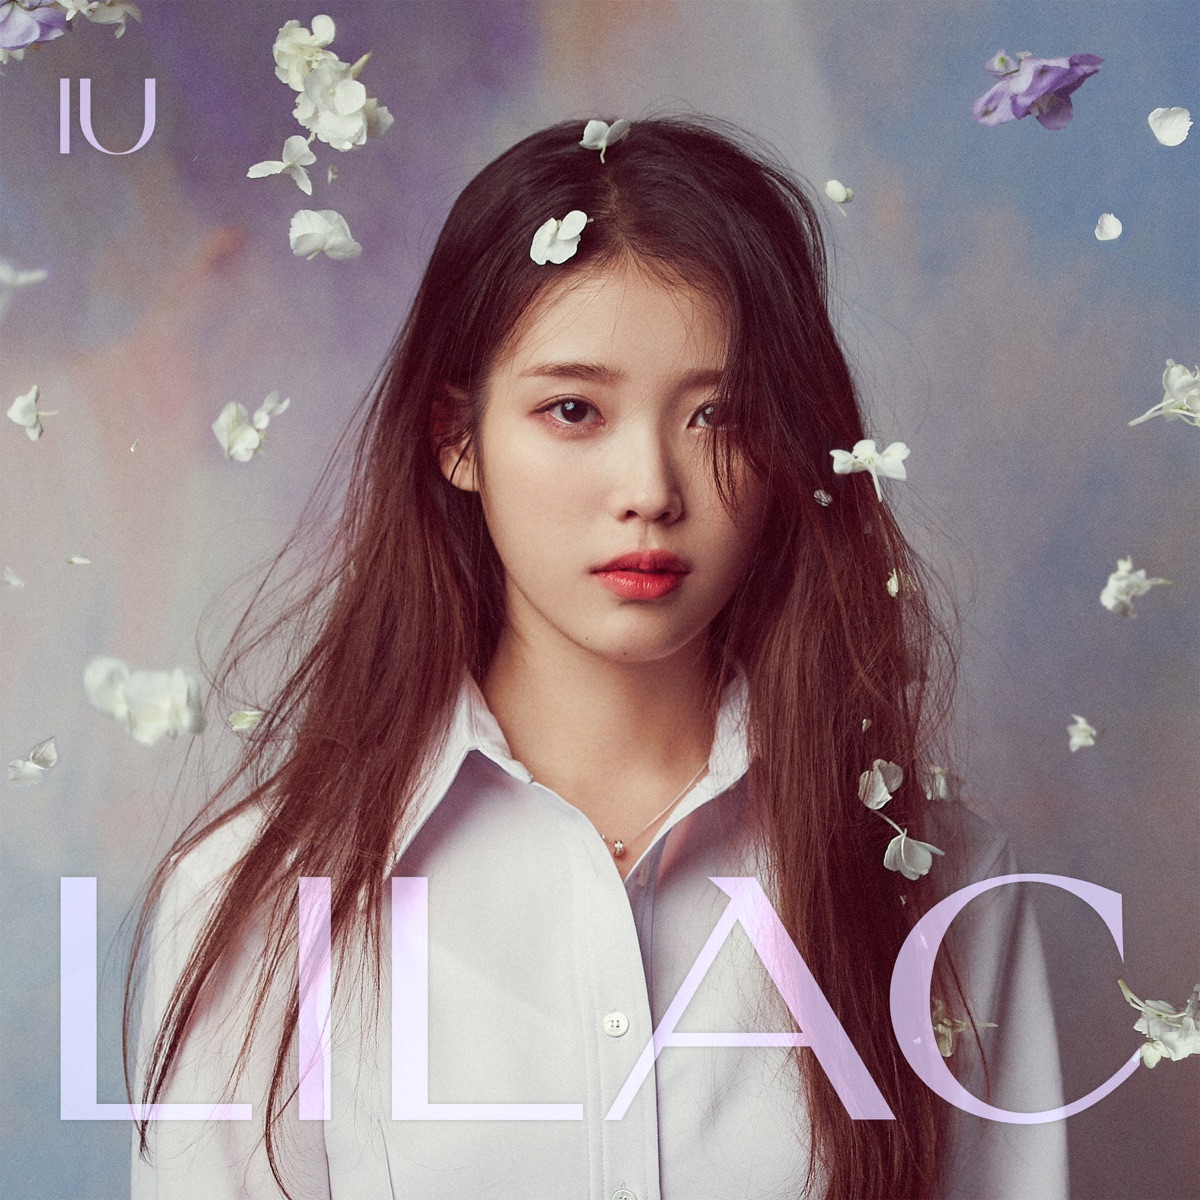 『IU - LILAC』収録の『IU 5th Album 'Lilac'』ジャケット